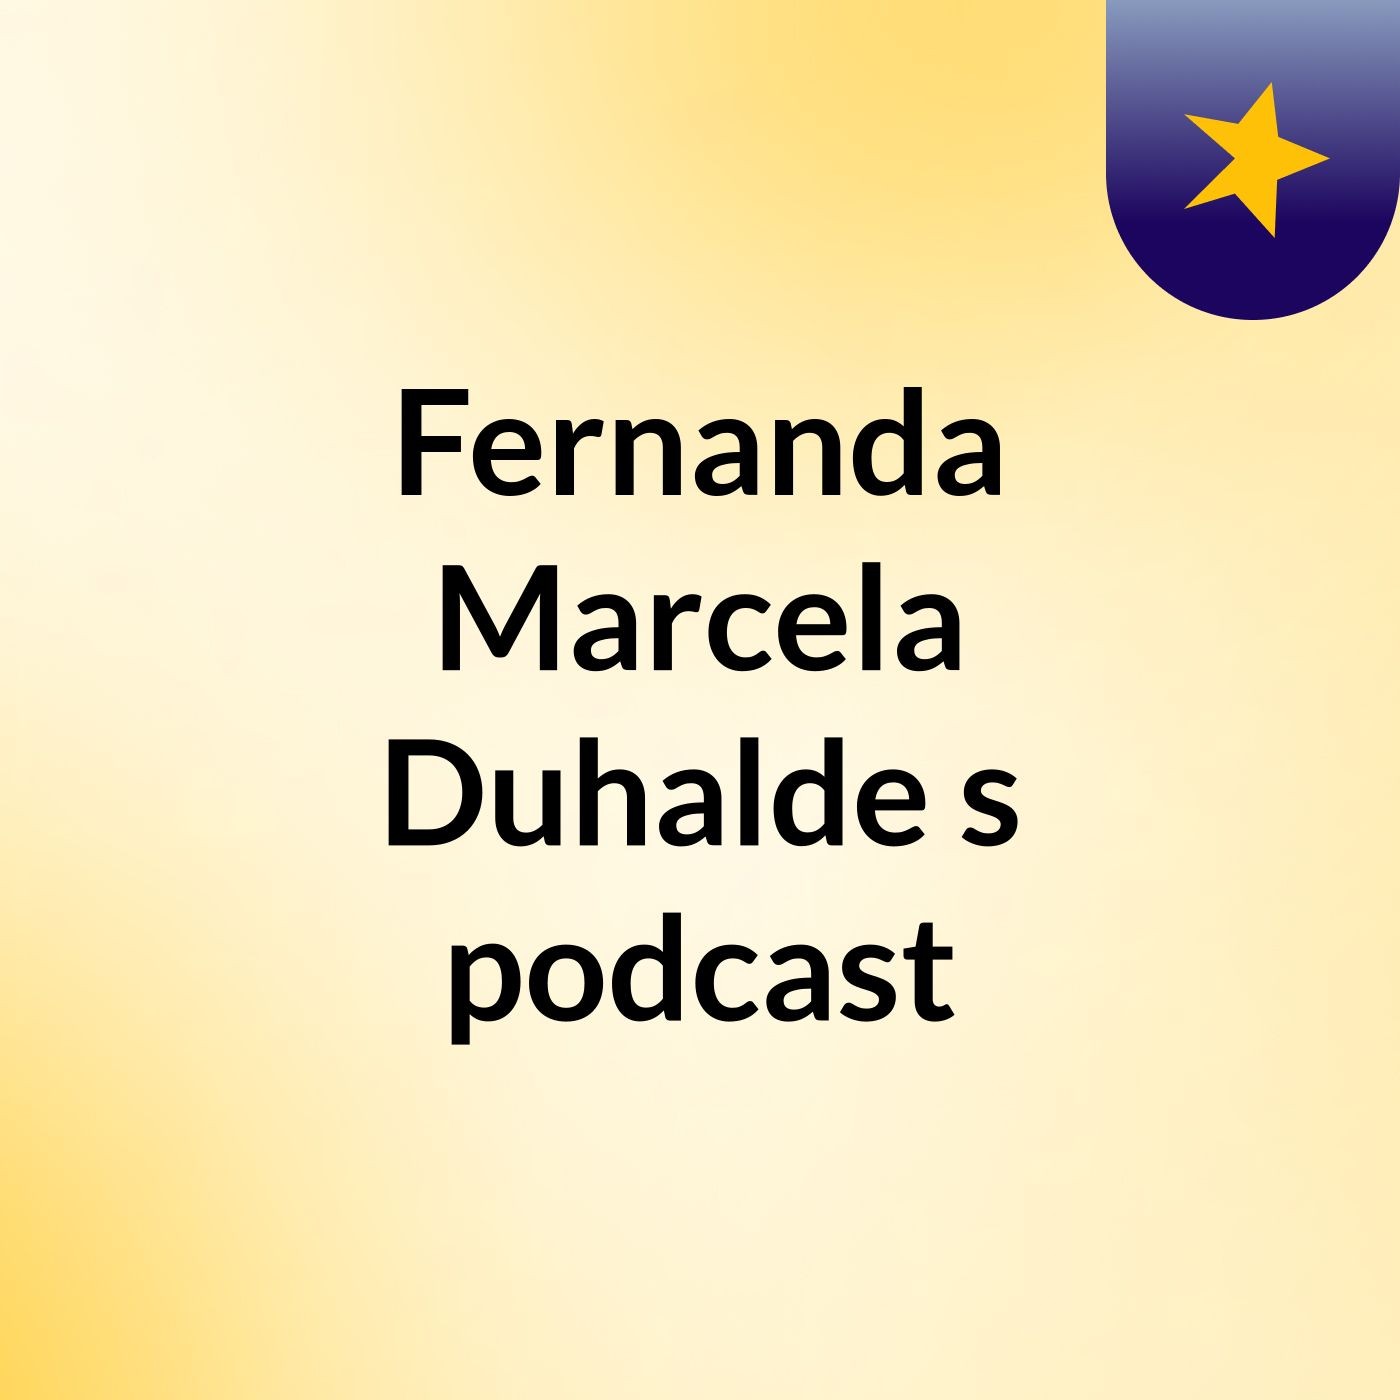 Fernanda Marcela Duhalde's podcast